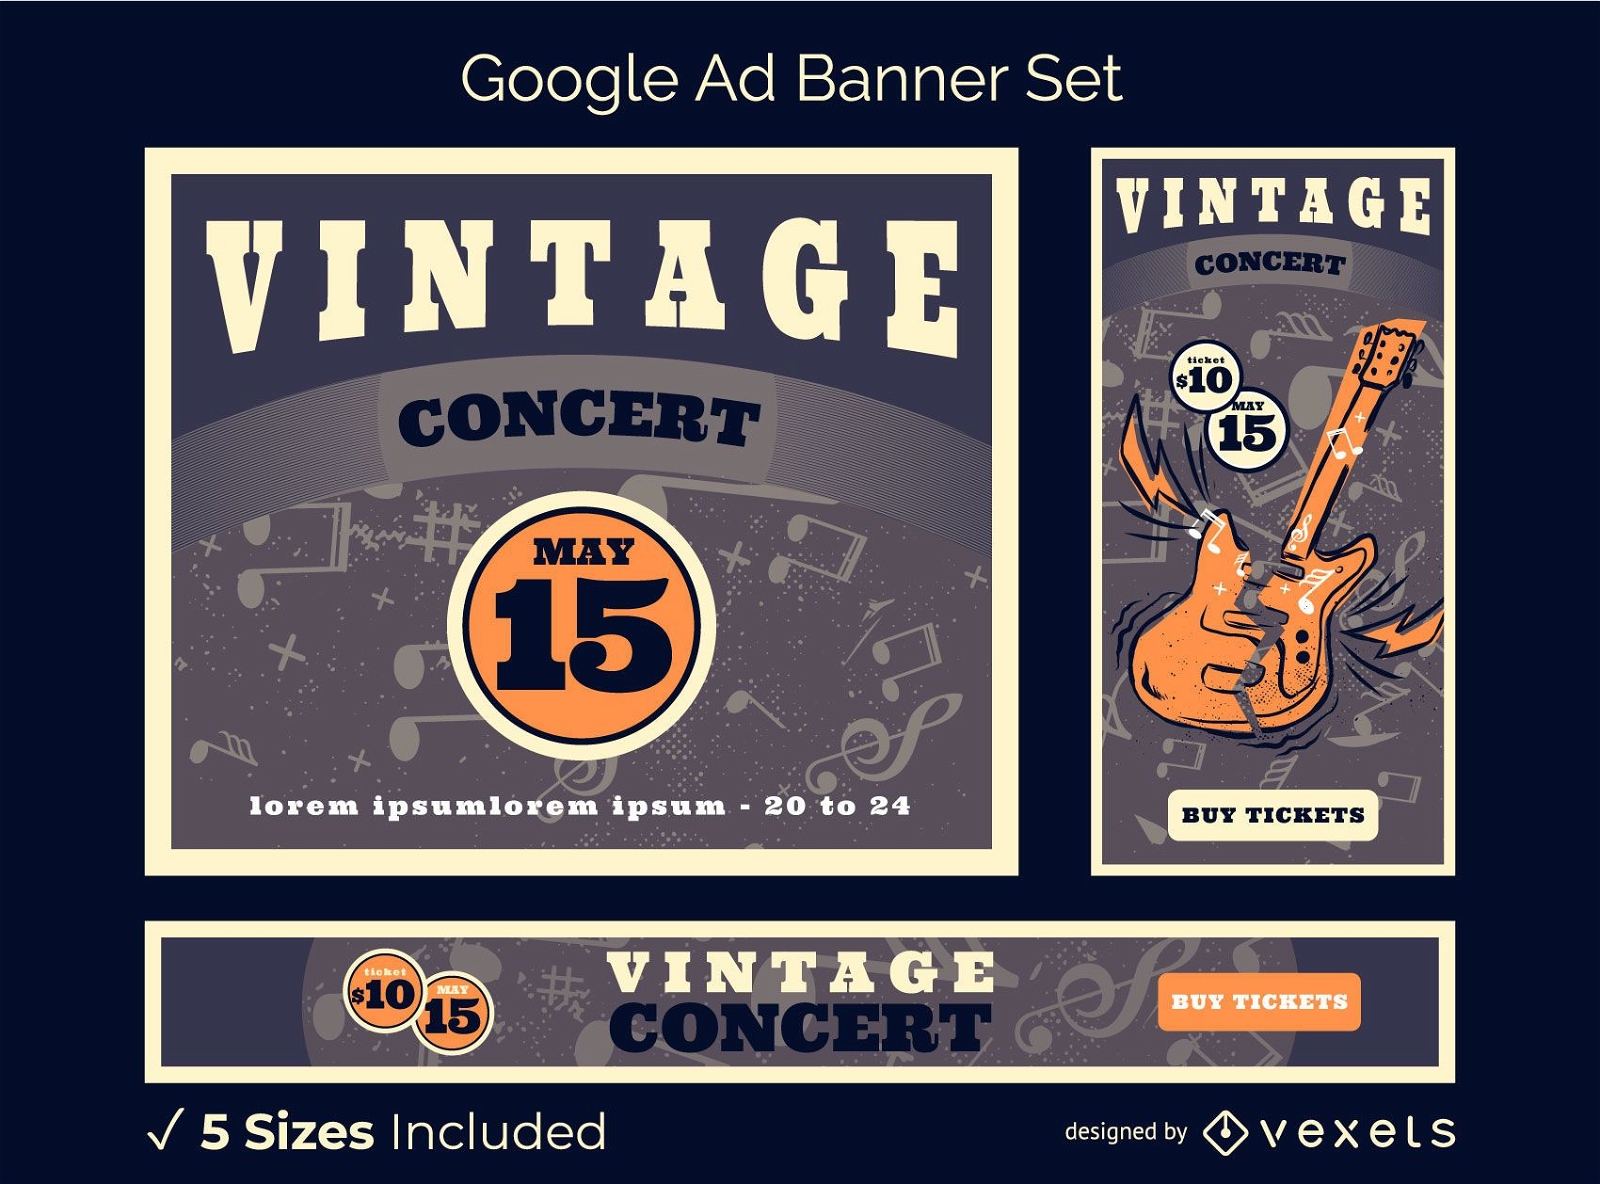 Vintage Concert Google Ads Banner Pack